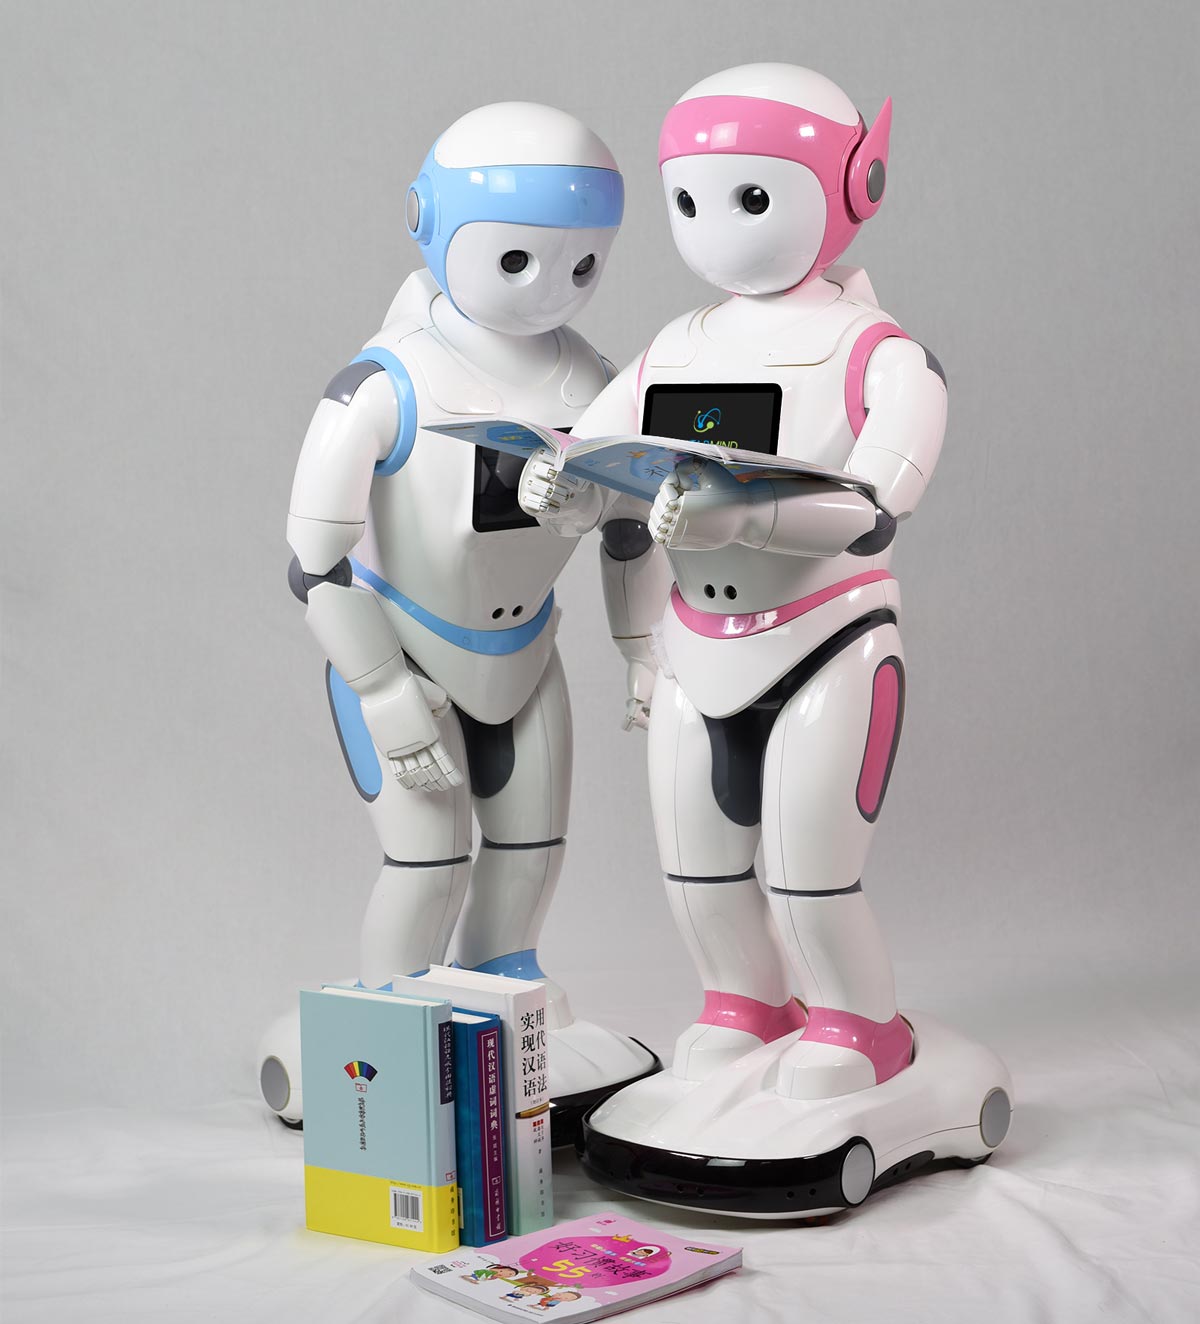 iPal and Social Robotics